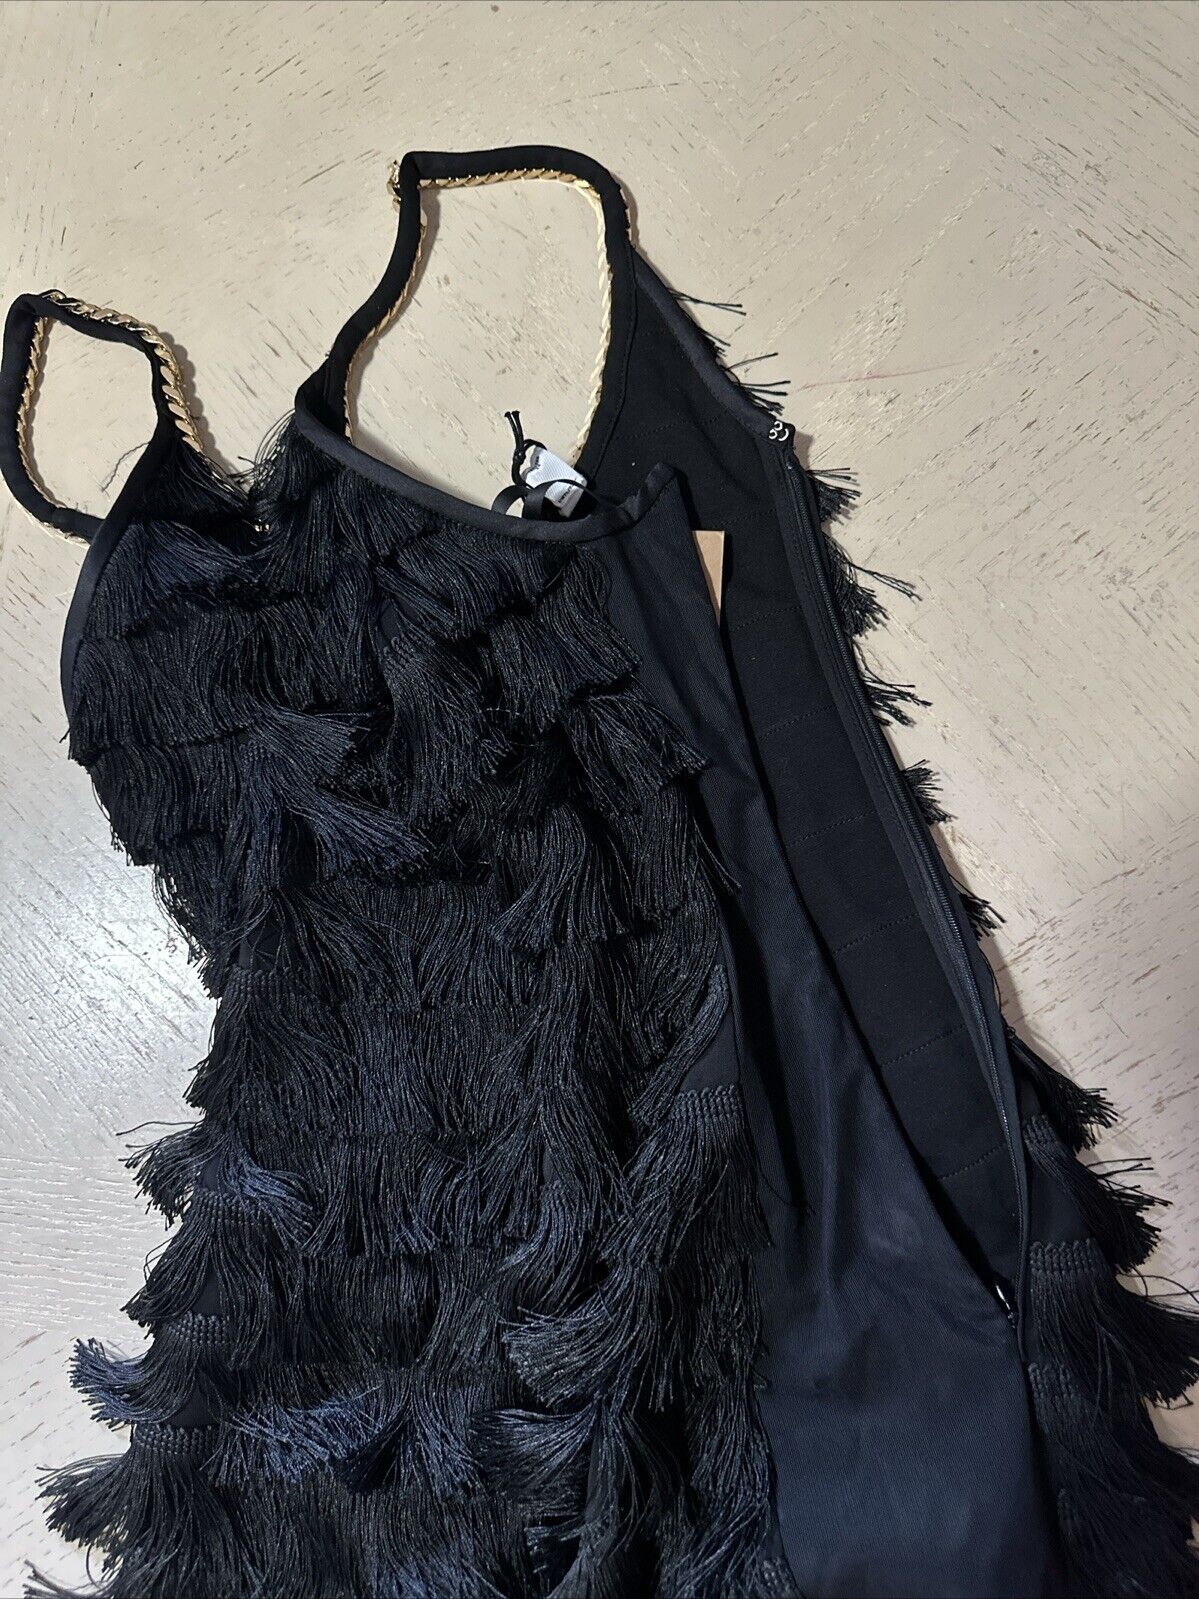 Burberry Melina Fringe Layered Dress Black 2 US/36 It Italy New $4190